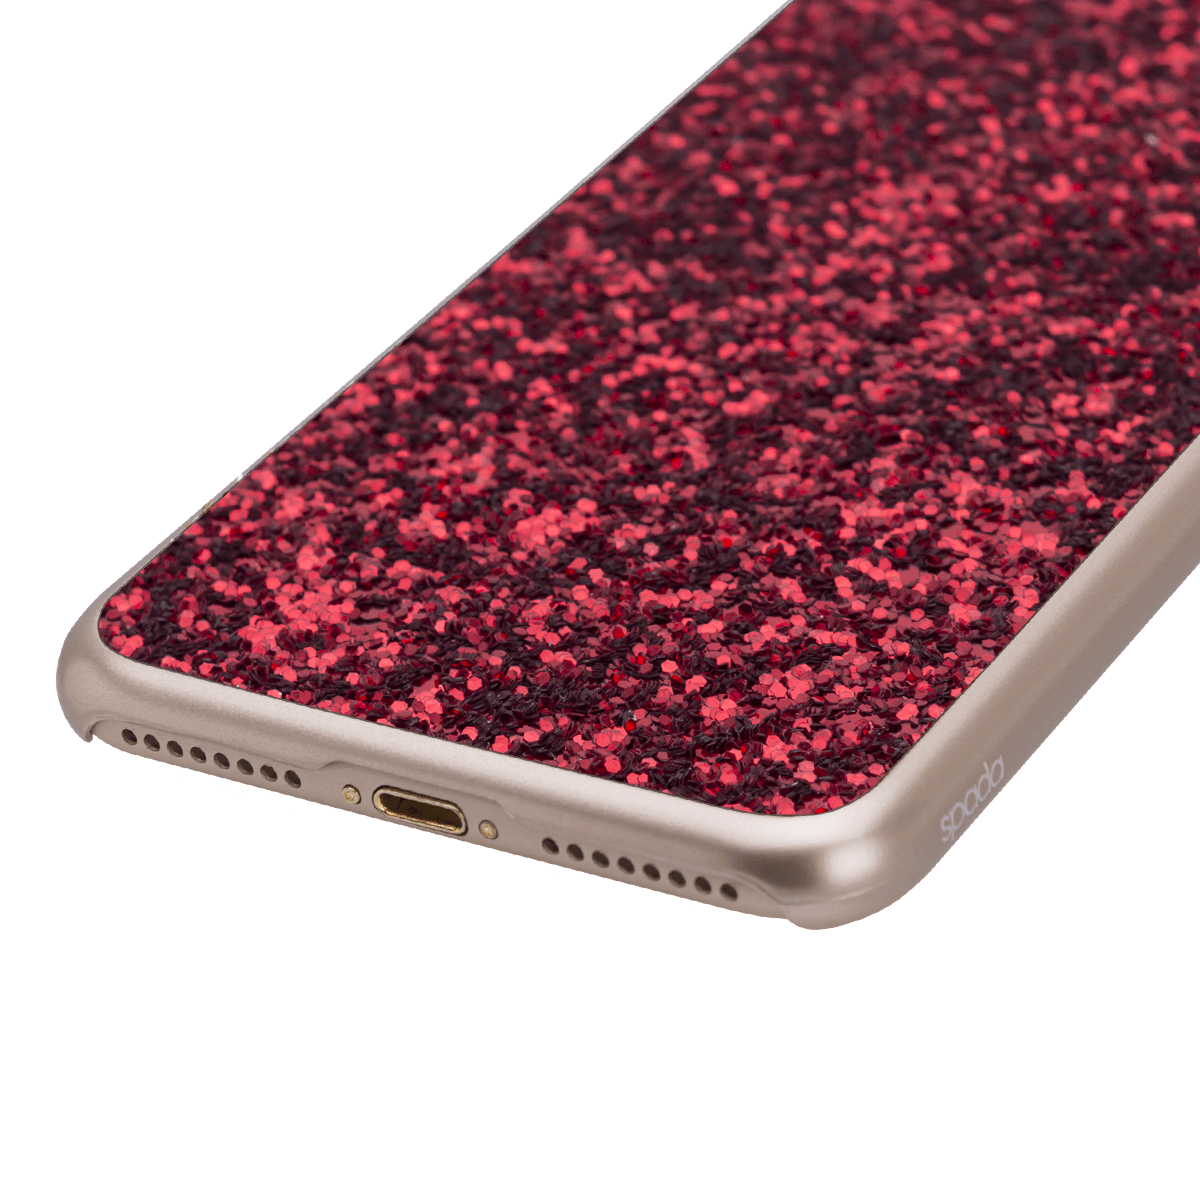 iPhone 7/8 Plus için spada Glitter Kırmızı renk Kapak